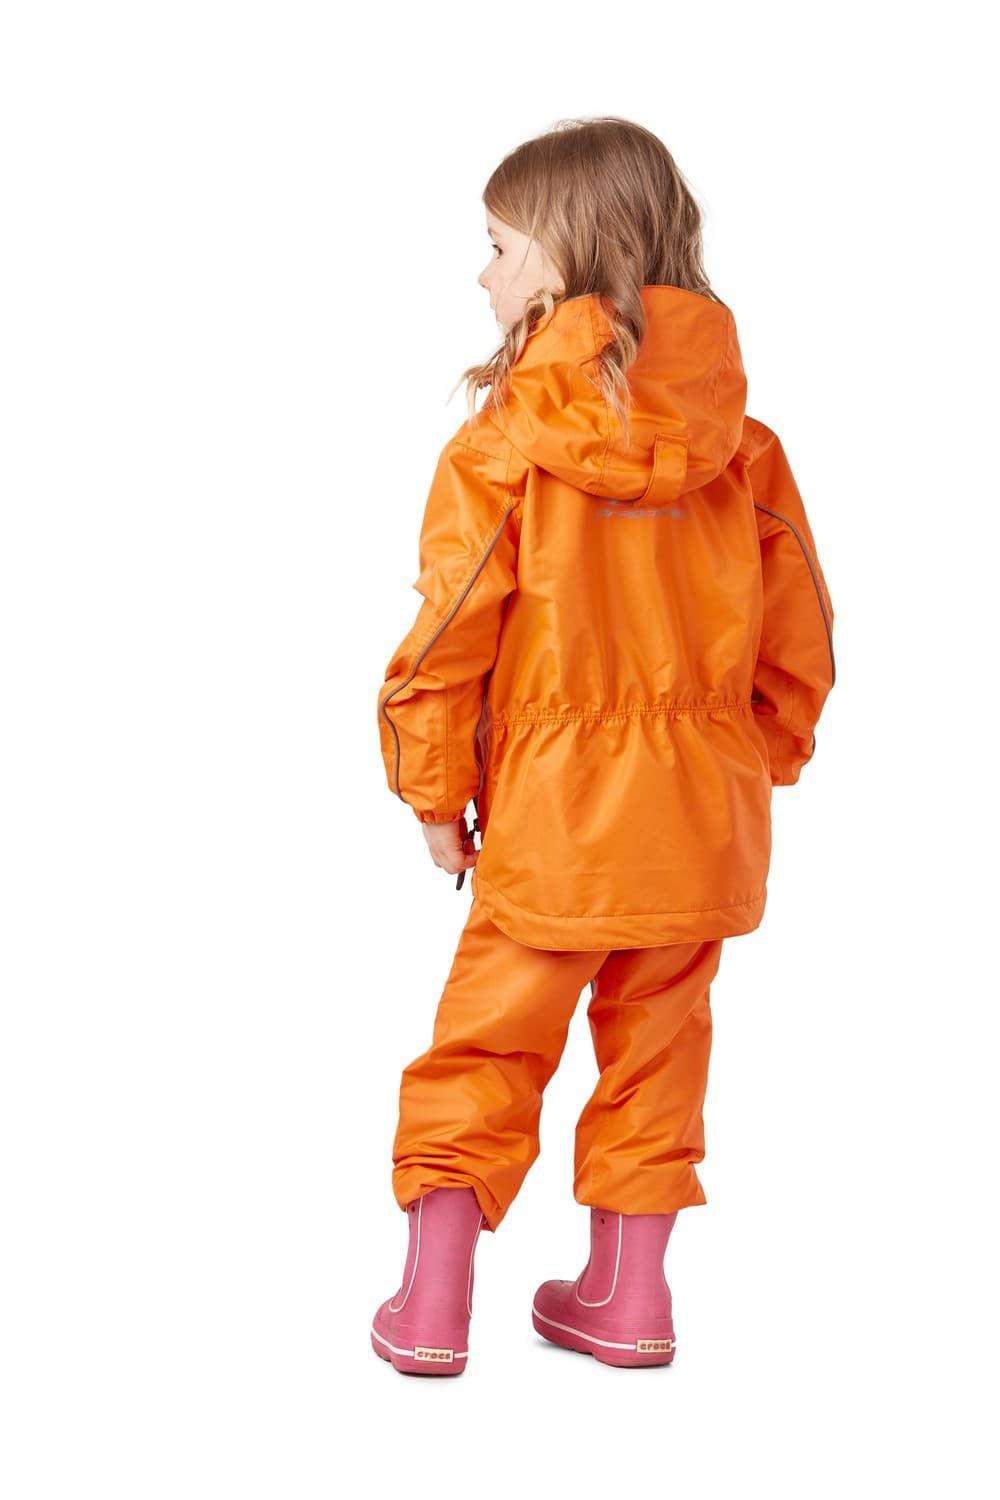 Детский комплект дождевой (куртка, брюки). EVO Kids ORANGE (мембрана) (р. 140-146) купить за 6 200 руб.